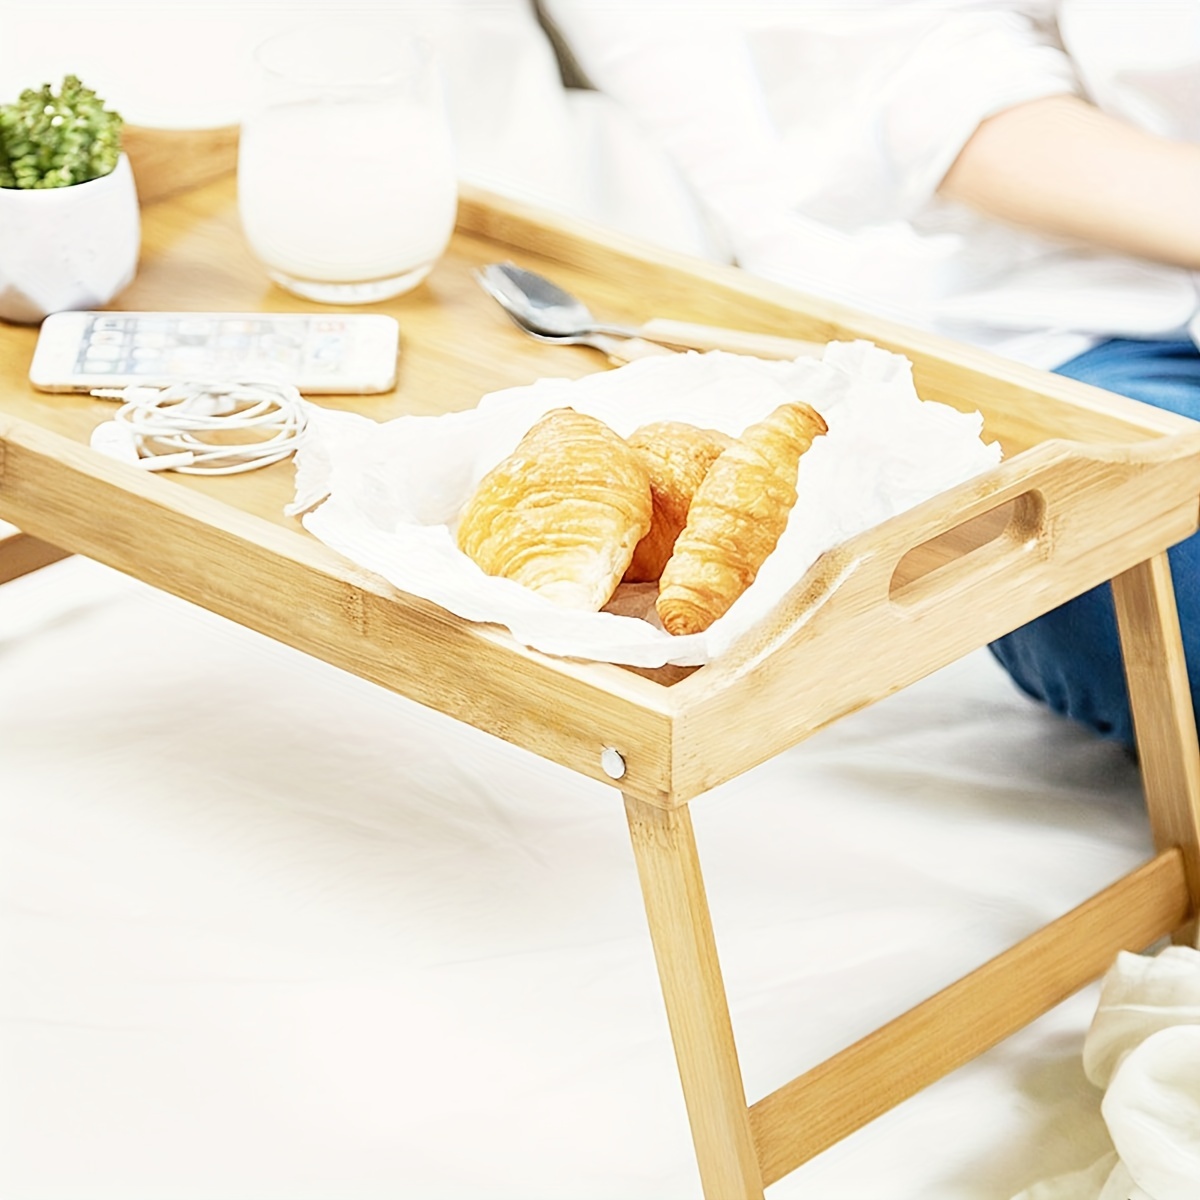  Mesa de cama, bandeja de cama de bambú, mesa de escritorio, bandeja  de oficina en casa, bandeja de mesa de oficina, bandeja de cama para bandeja  rectangular para servir bandejas de